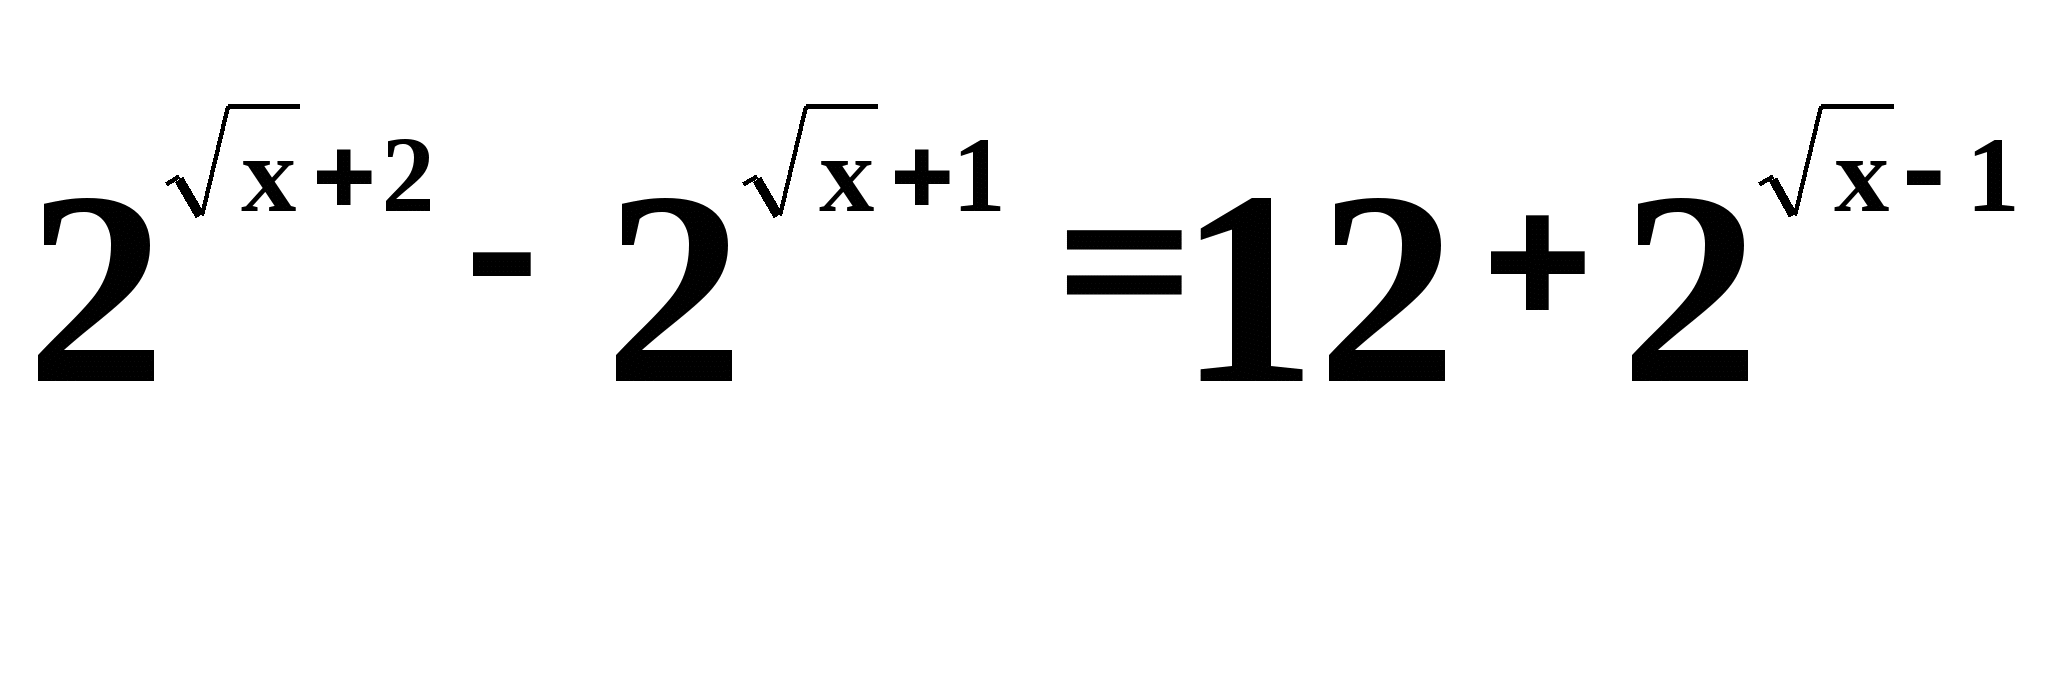 Конспект урока по алгебре и началам анализа на тему Решение показательных уравнений (11 класс)